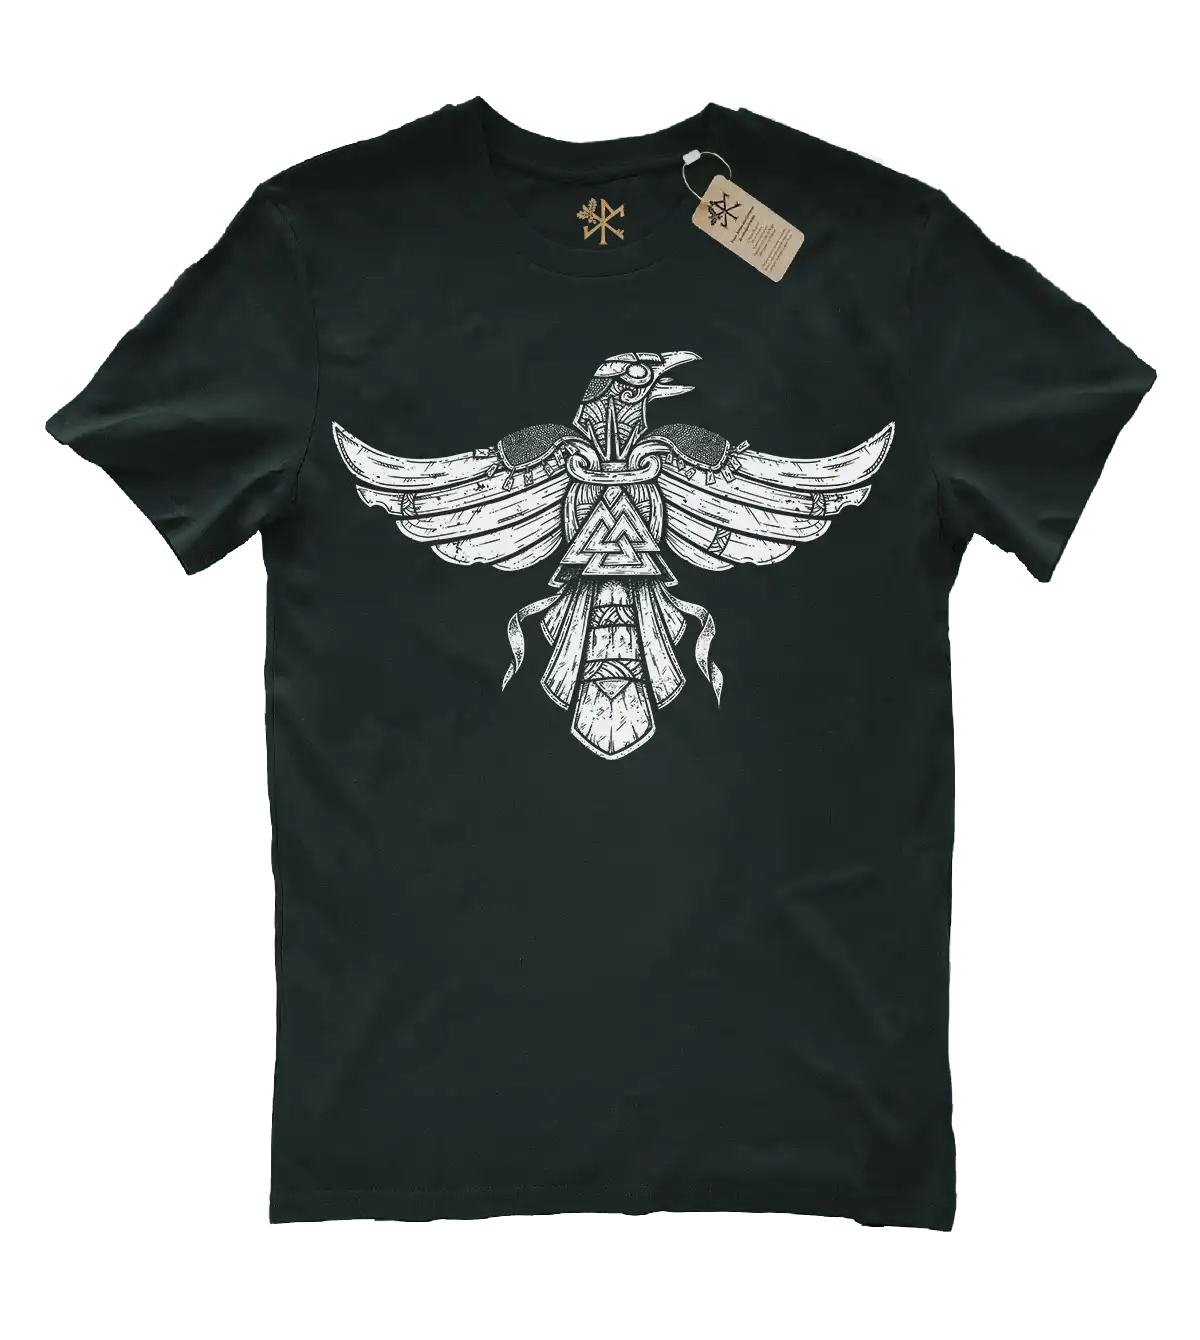 Huginn - t-shirt corbeau viking (fin de série)